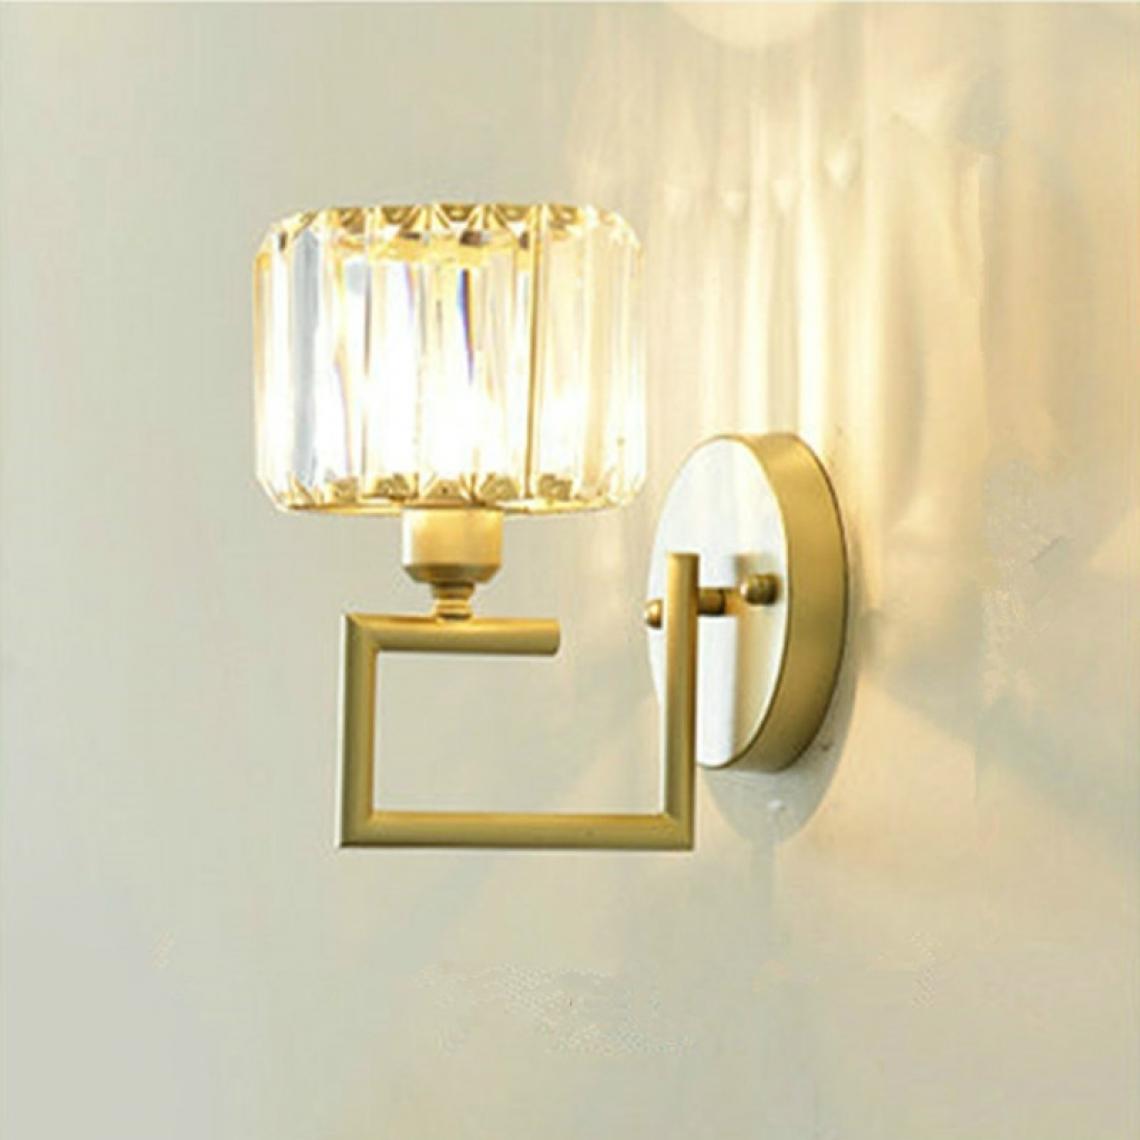 Wewoo - Applique murale LED E27 cristal lampe de chevet de chambre salon muralecouleur de la lumière B White Light 5W - Appliques